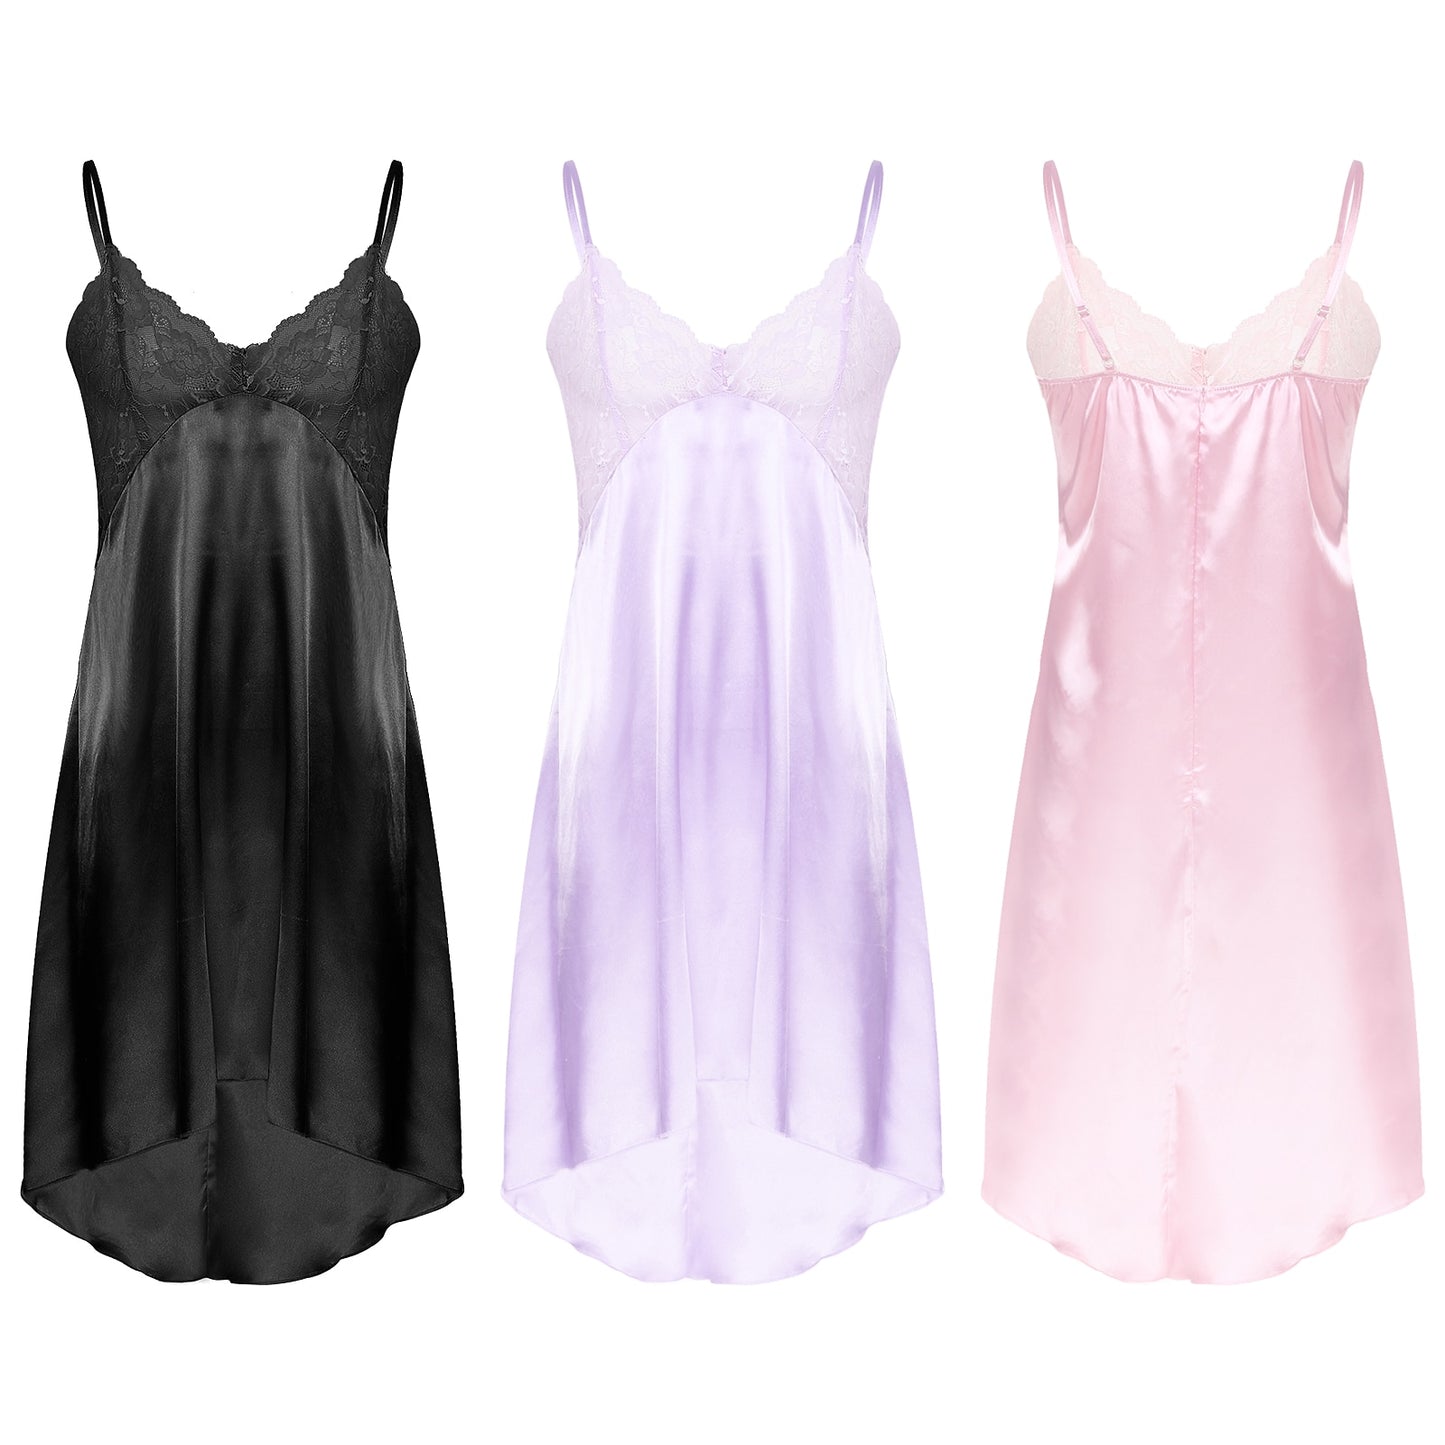 Satin Lace Nightwear: Elegant Lingerie for Crossdressers